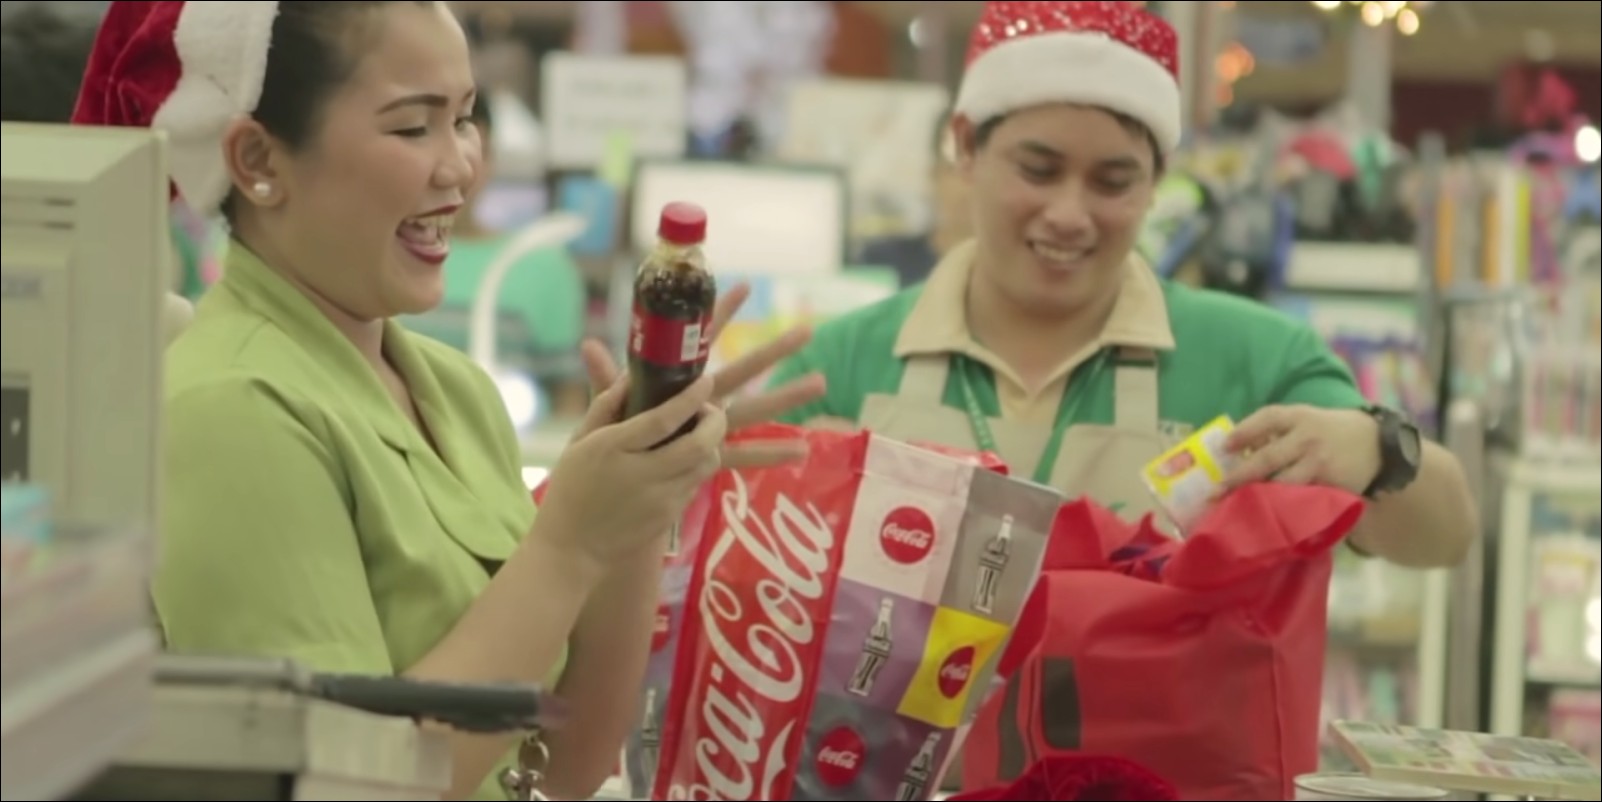 Strategia di marketing video di Coca-Cola